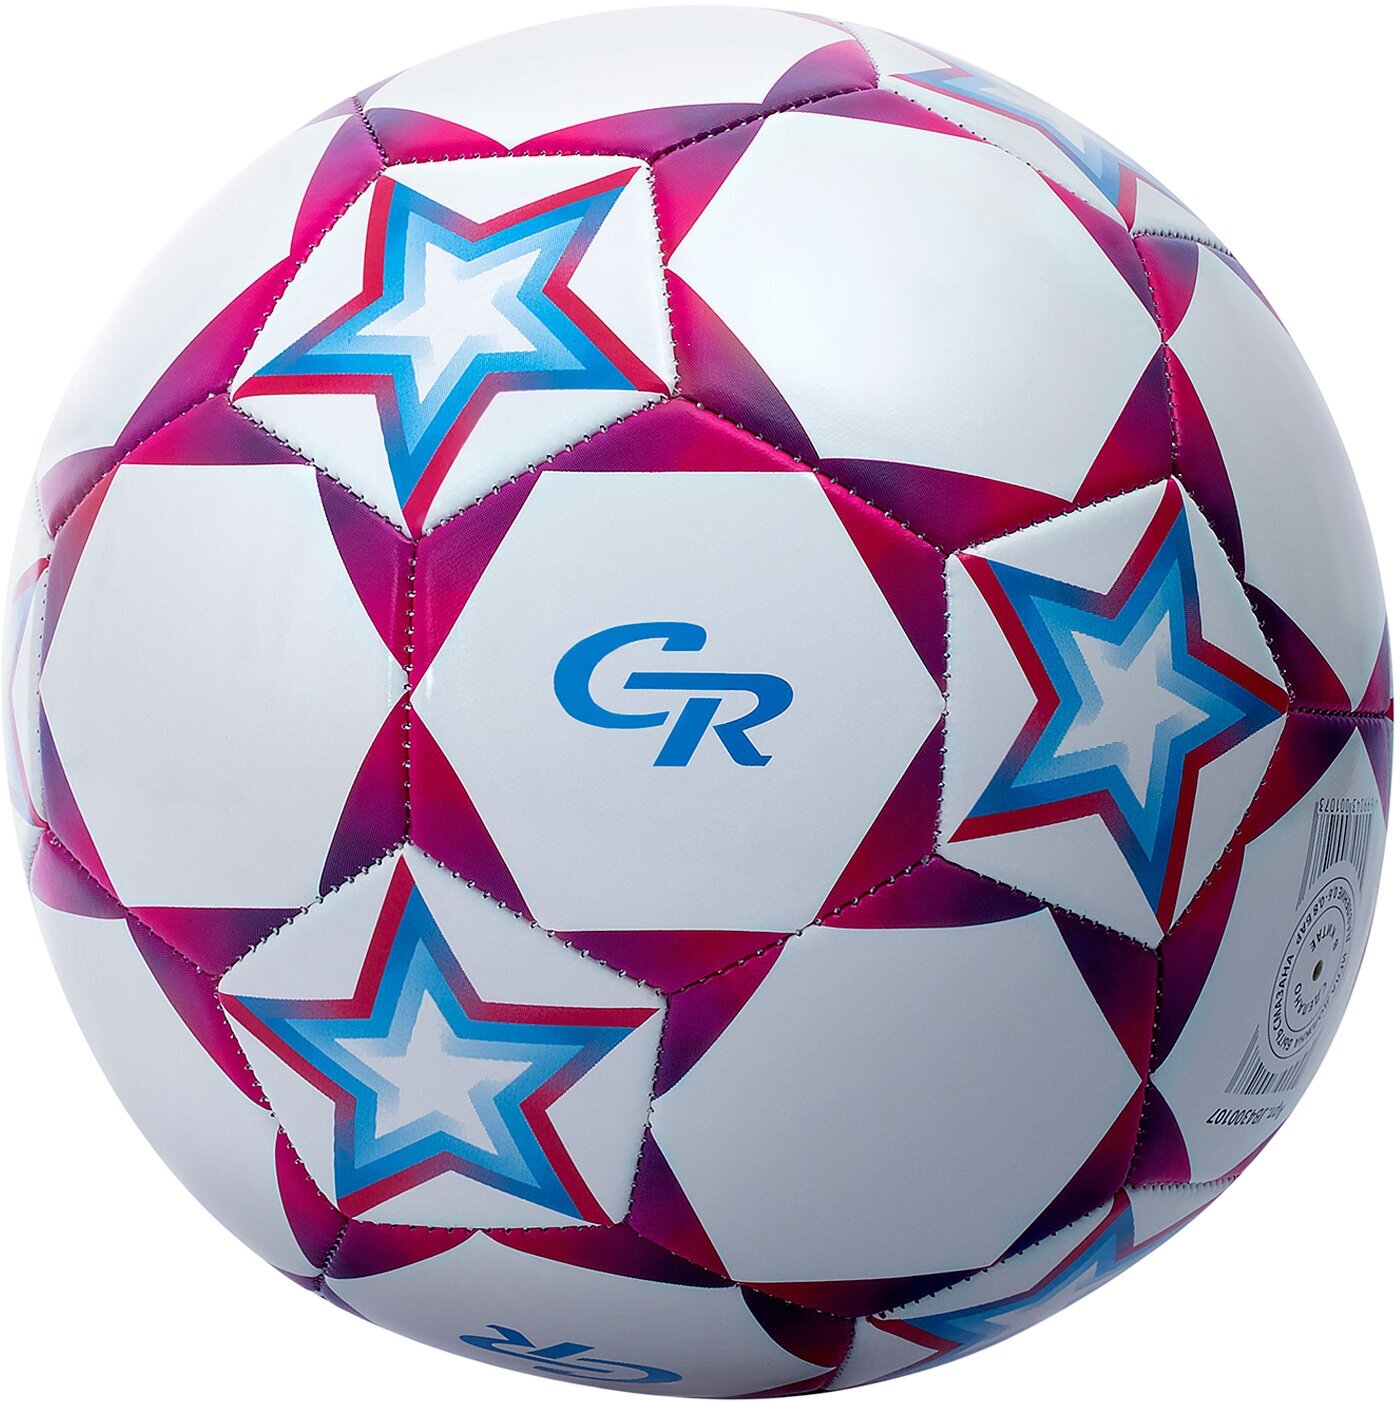 Мяч футбольный ТМ CR, 3-слойный, сшитые панели, ПВХ, размер 5, диаметр 22, JB4300107